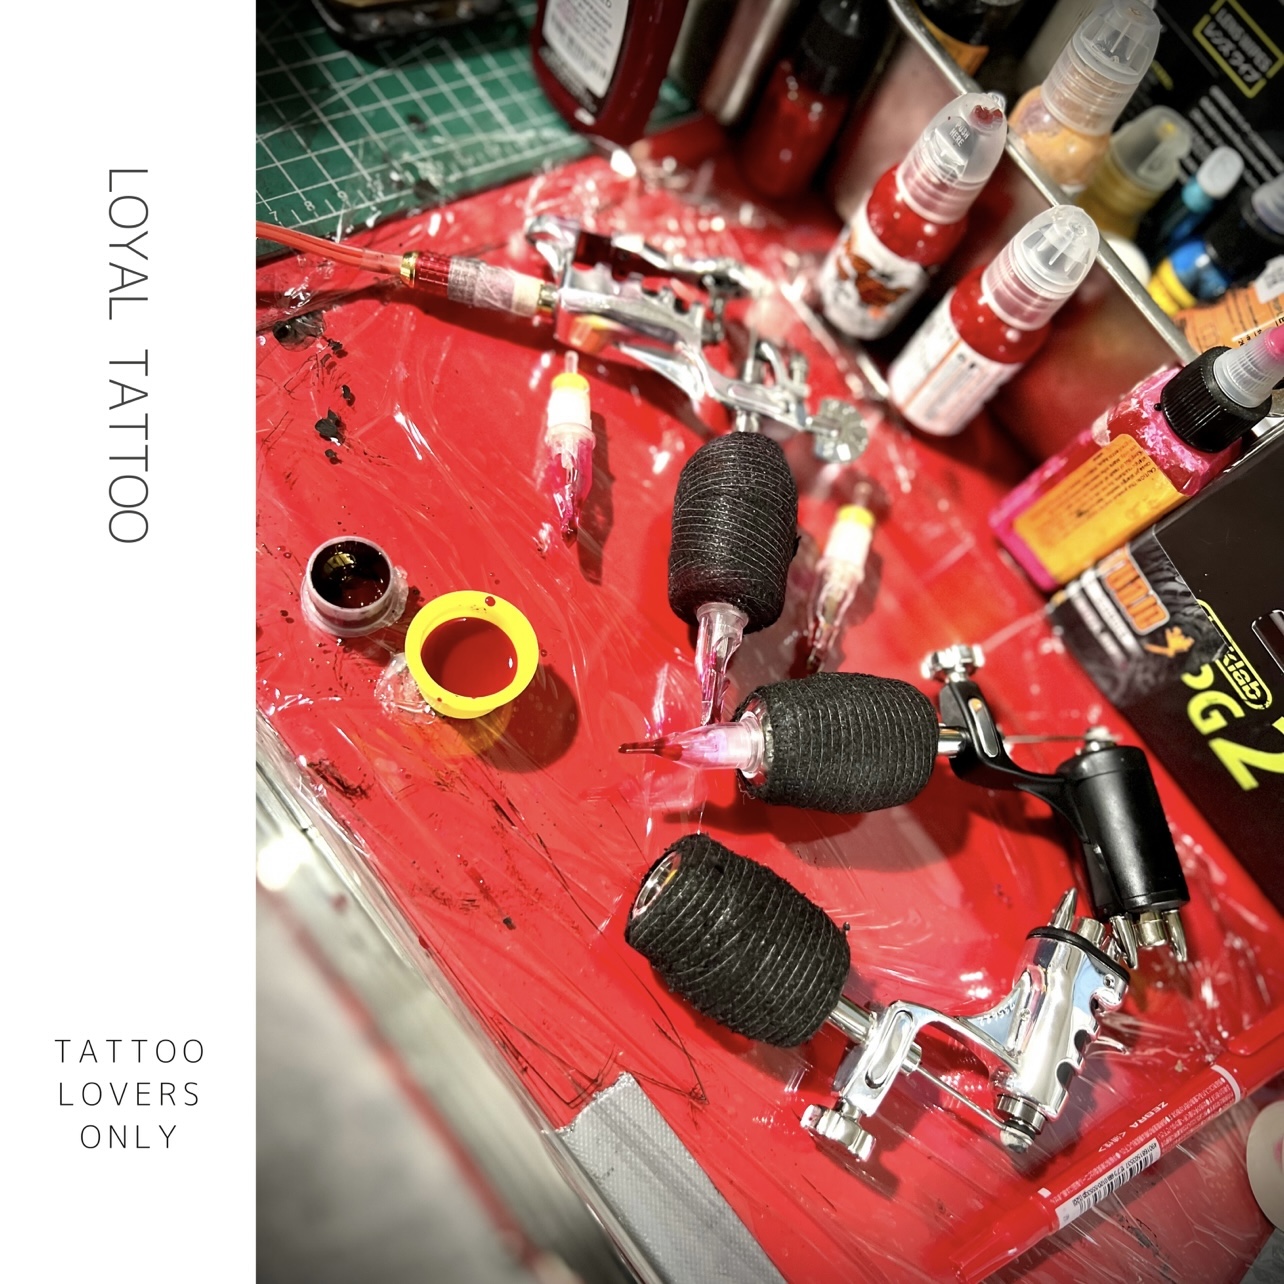 タトゥーマシンについて | 東京南青山タトゥースタジオ 刺青師 渋谷伊彫